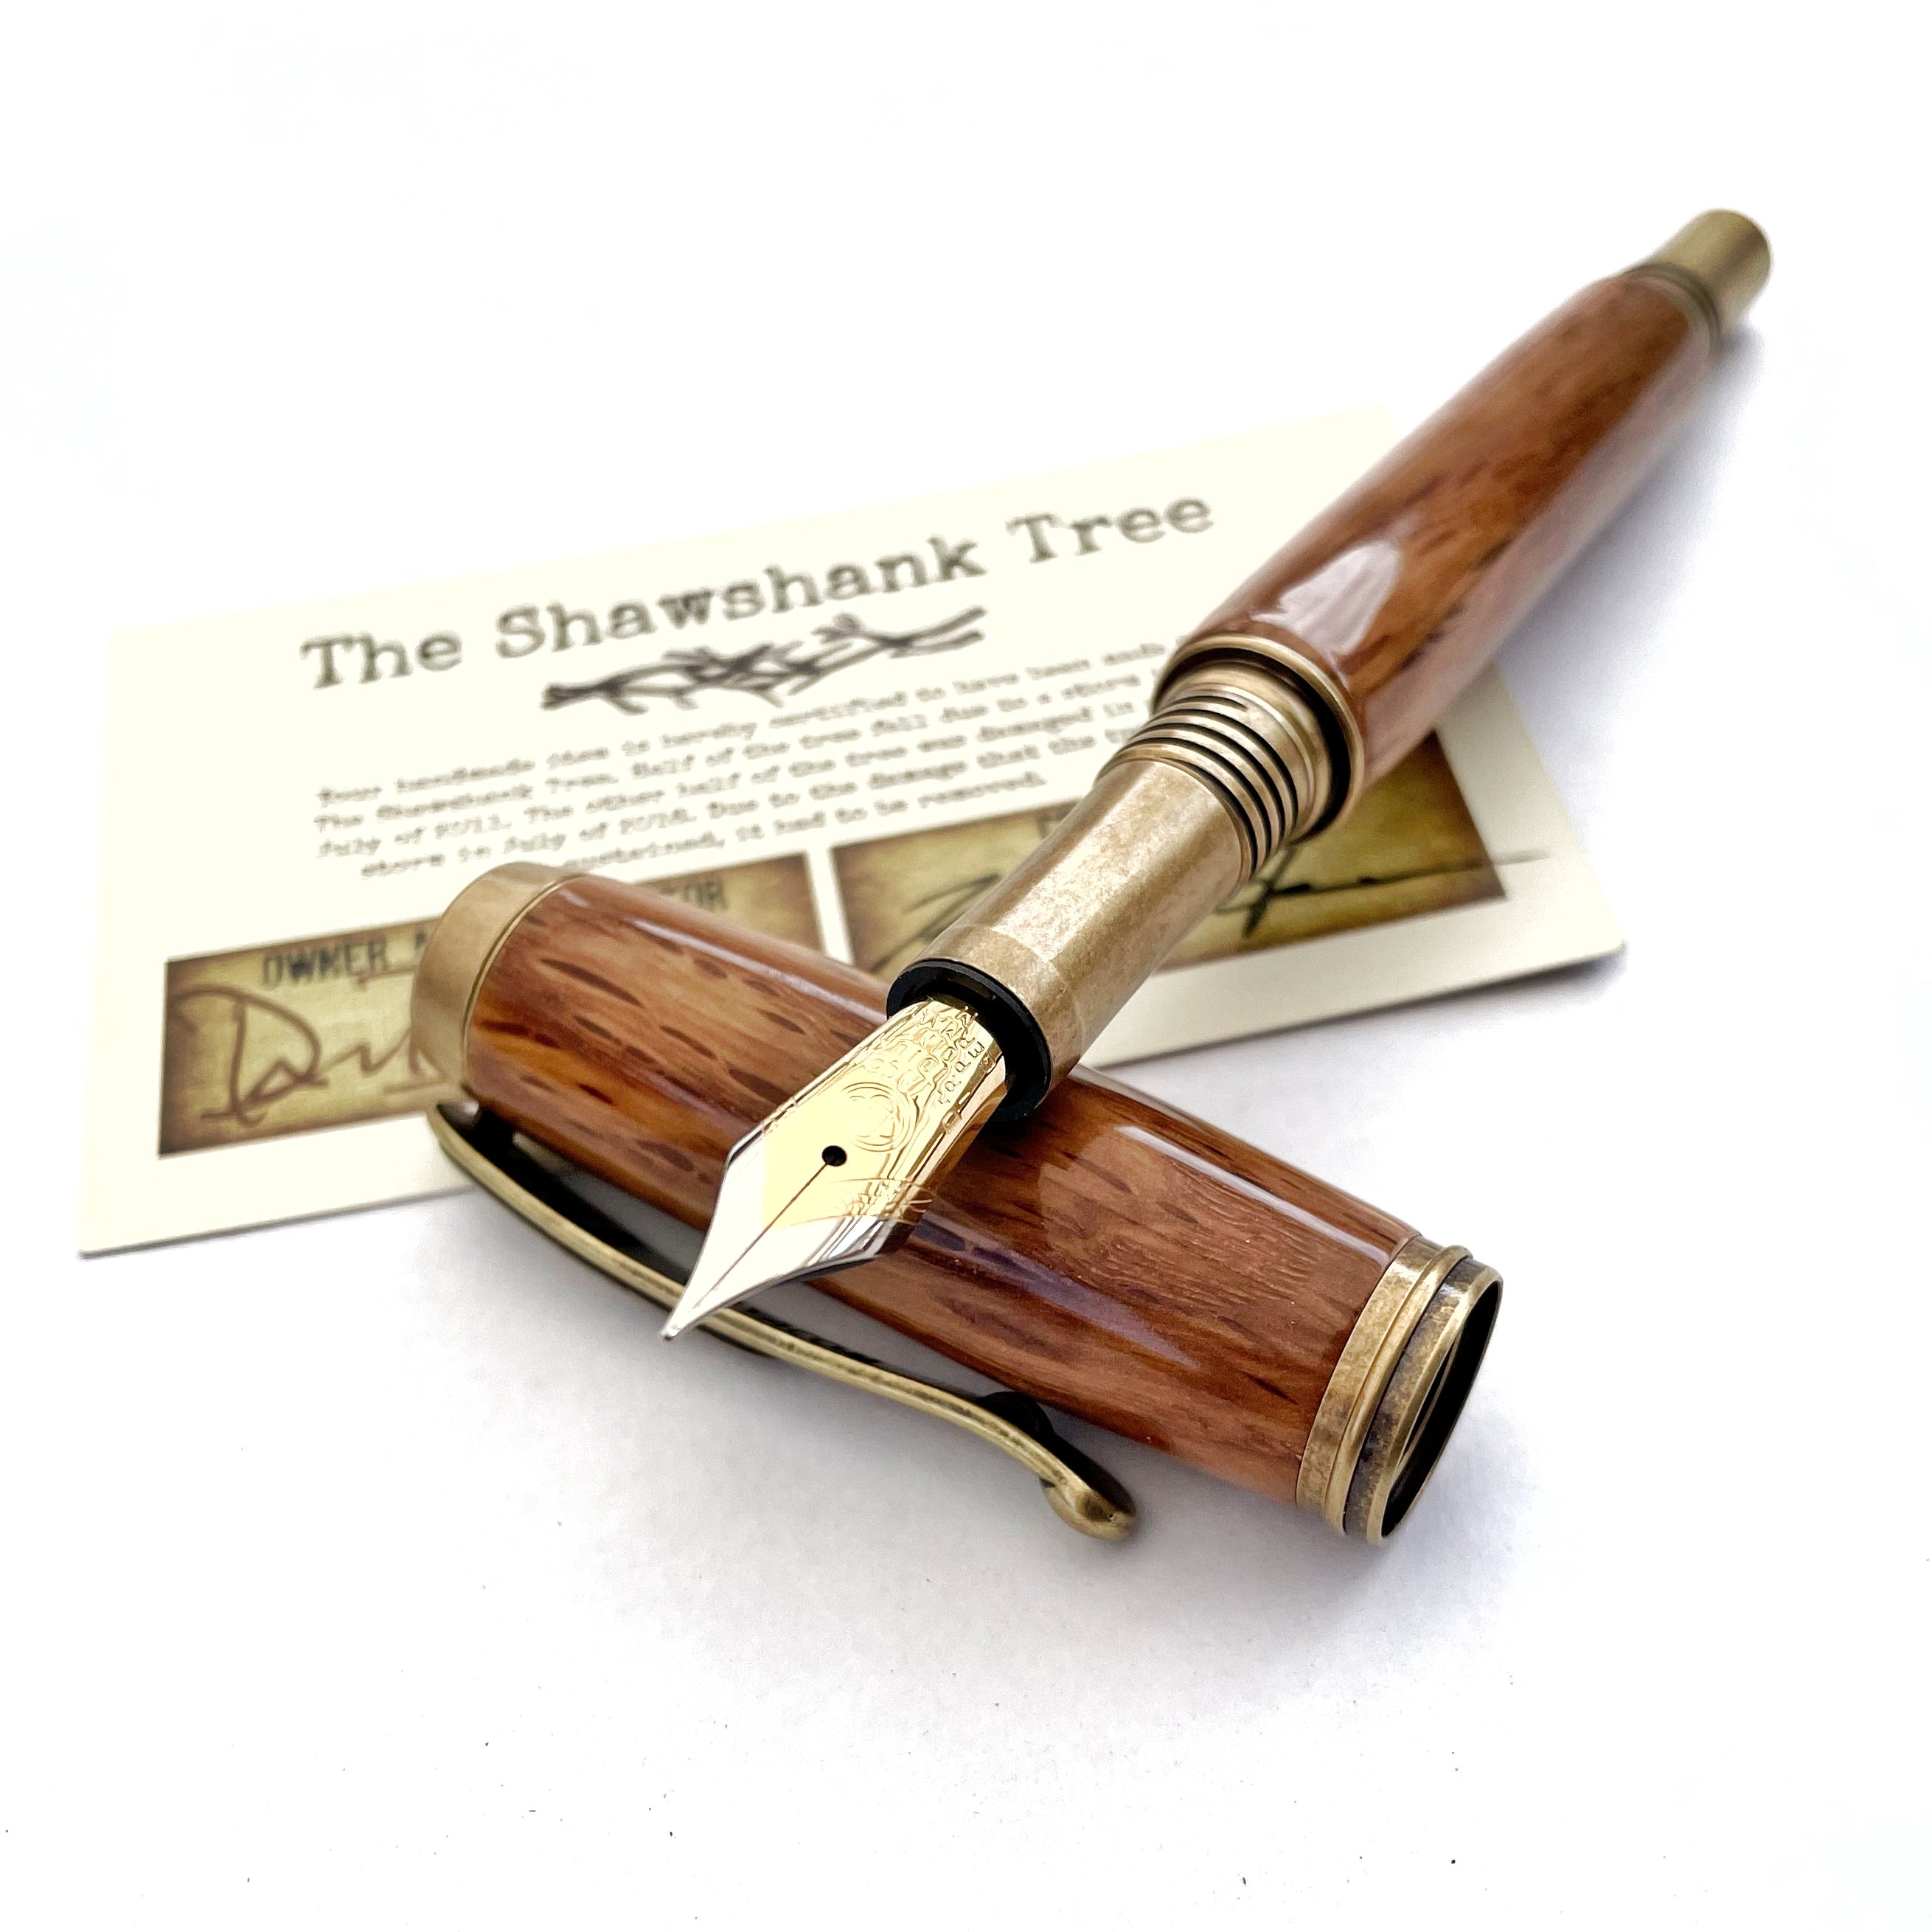 Shawshank Oak Tree  Fountain or Rollerball Pen – Bow & Harrow Workshop